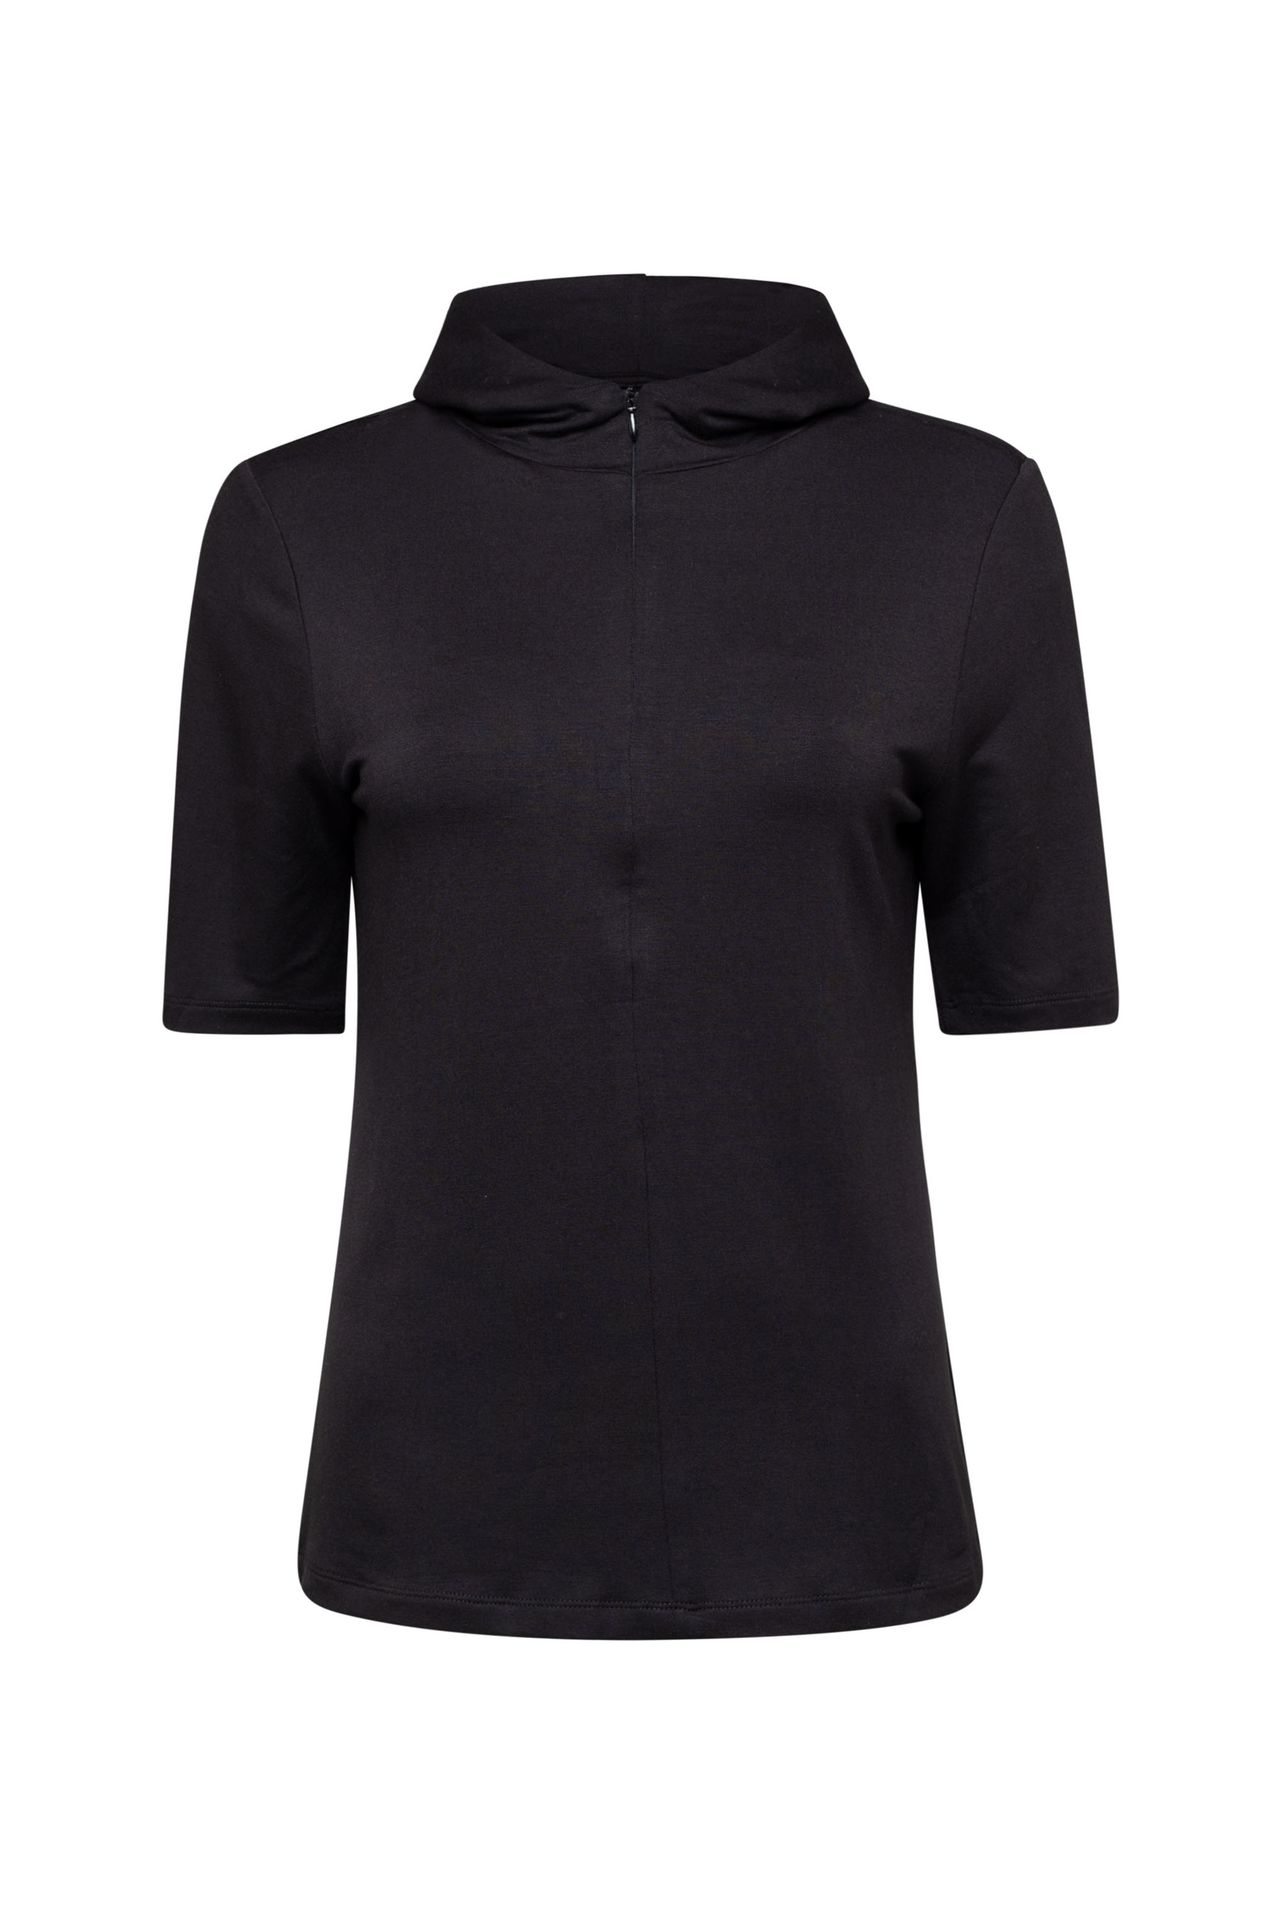 Norah Shirt black 211906-001